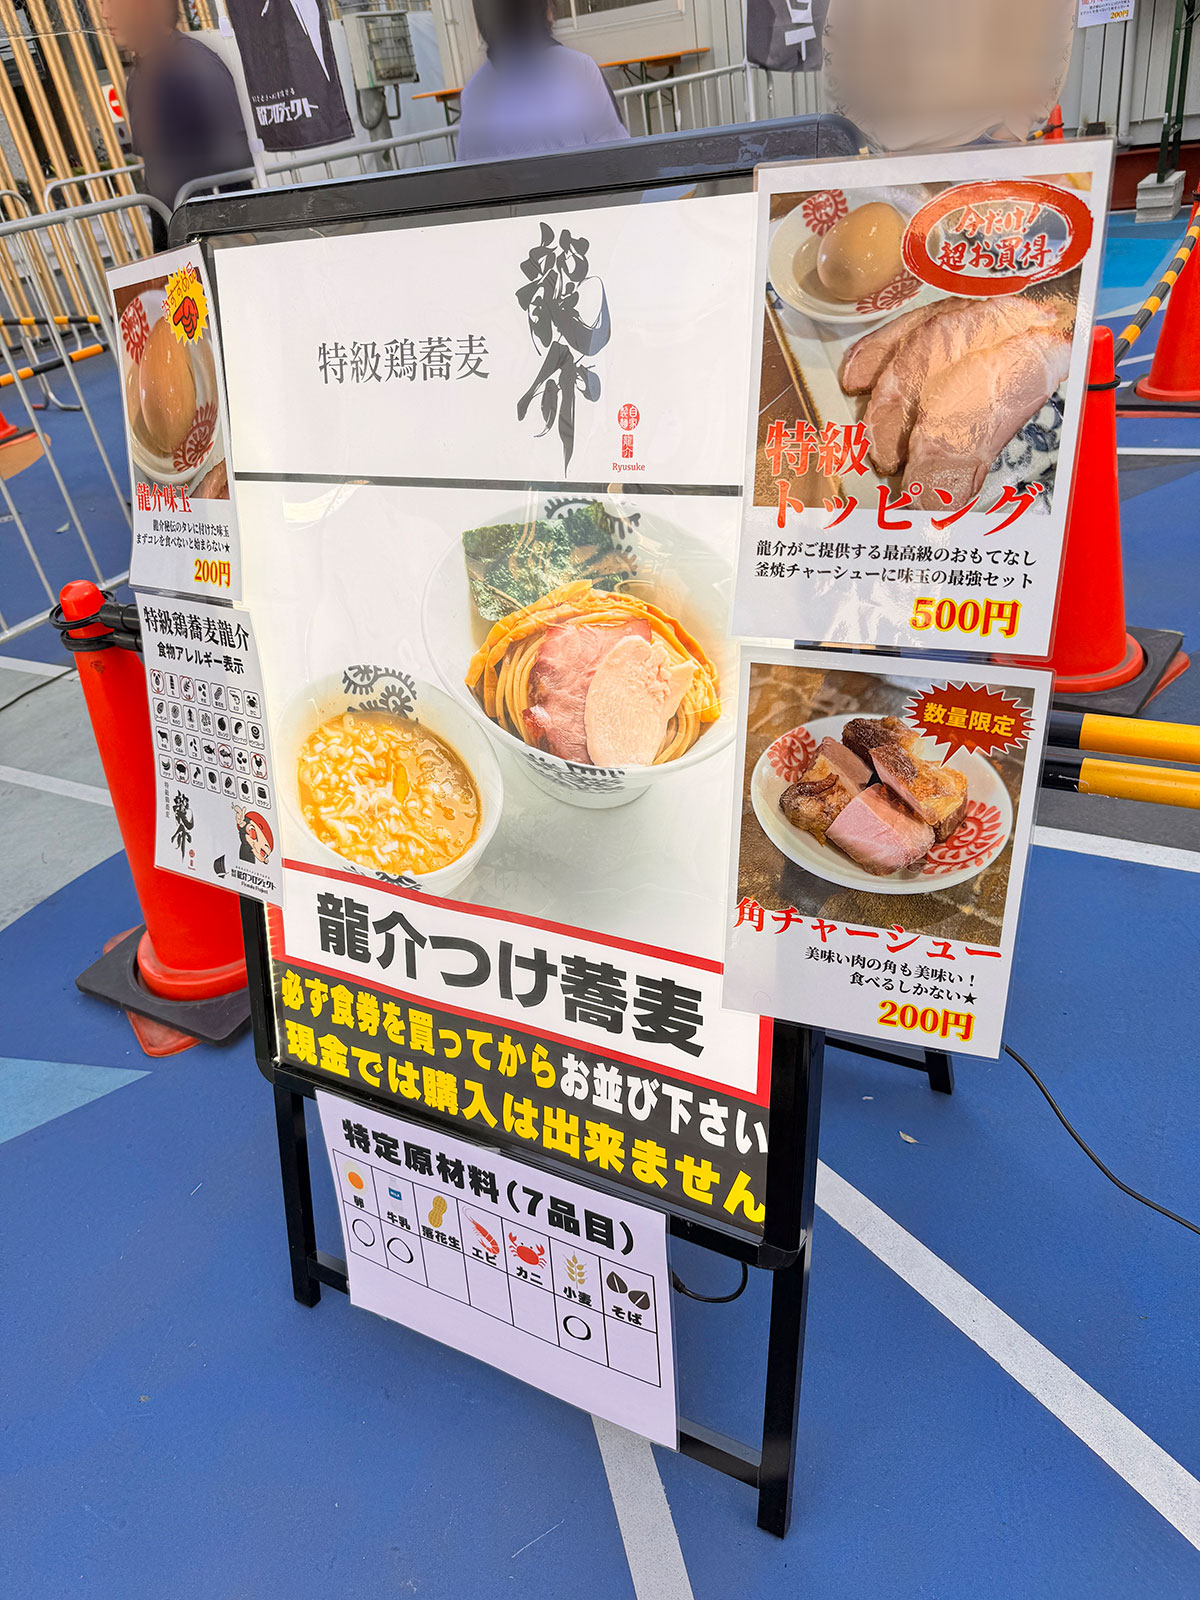 級鶏蕎麦龍介入口に掲示された商品案内。